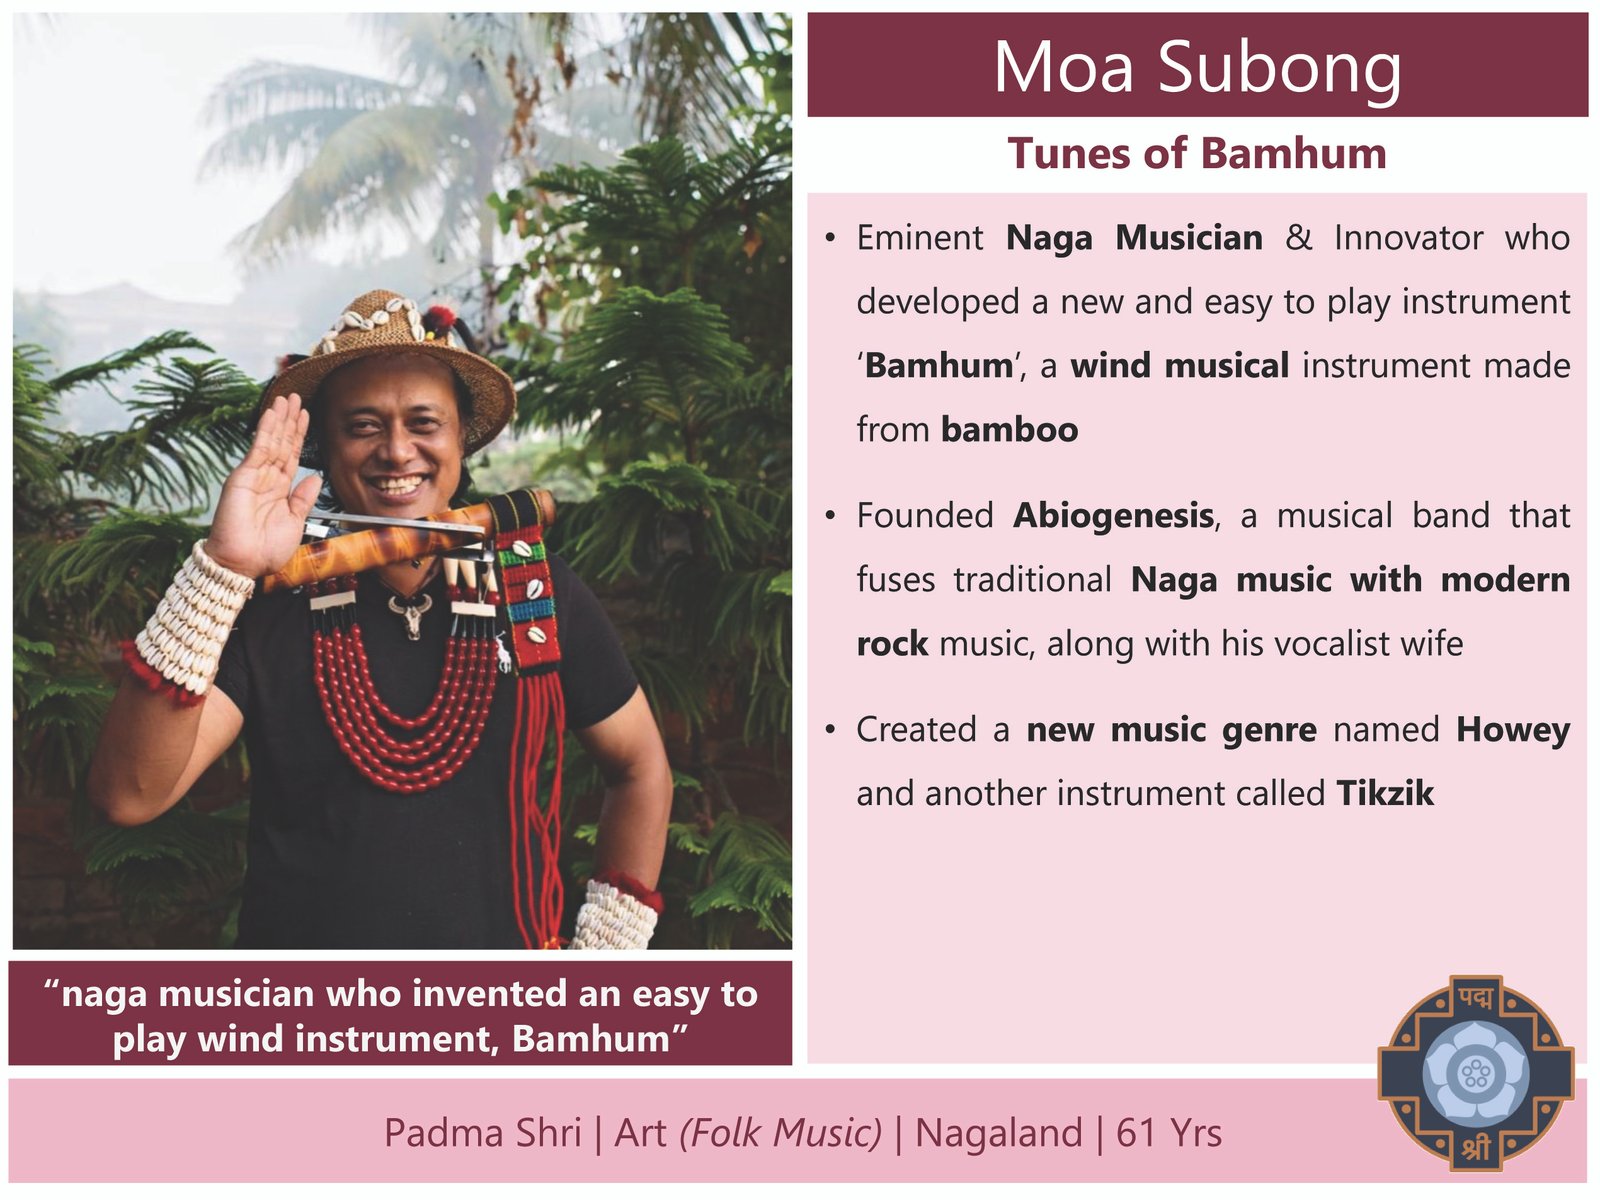 मोआ सुबोंग, कला (लोक संगीत), नगालैंड।